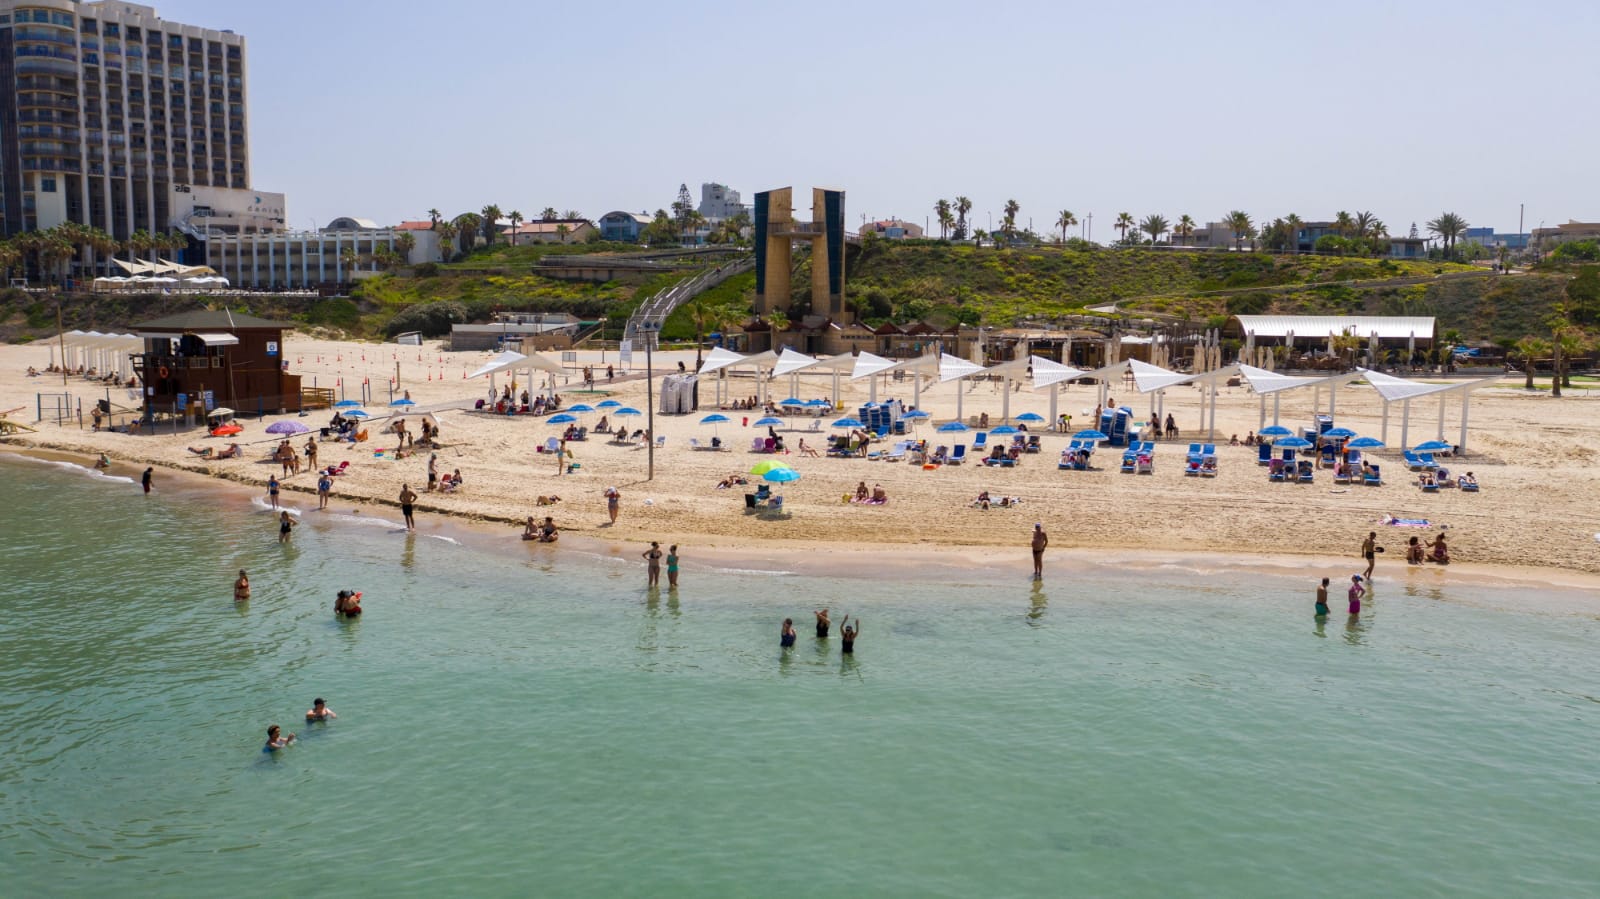 משרד הבריאות מתריע: אזהרת רחצה בכל חופי תל אביב, בת ים והרצליה